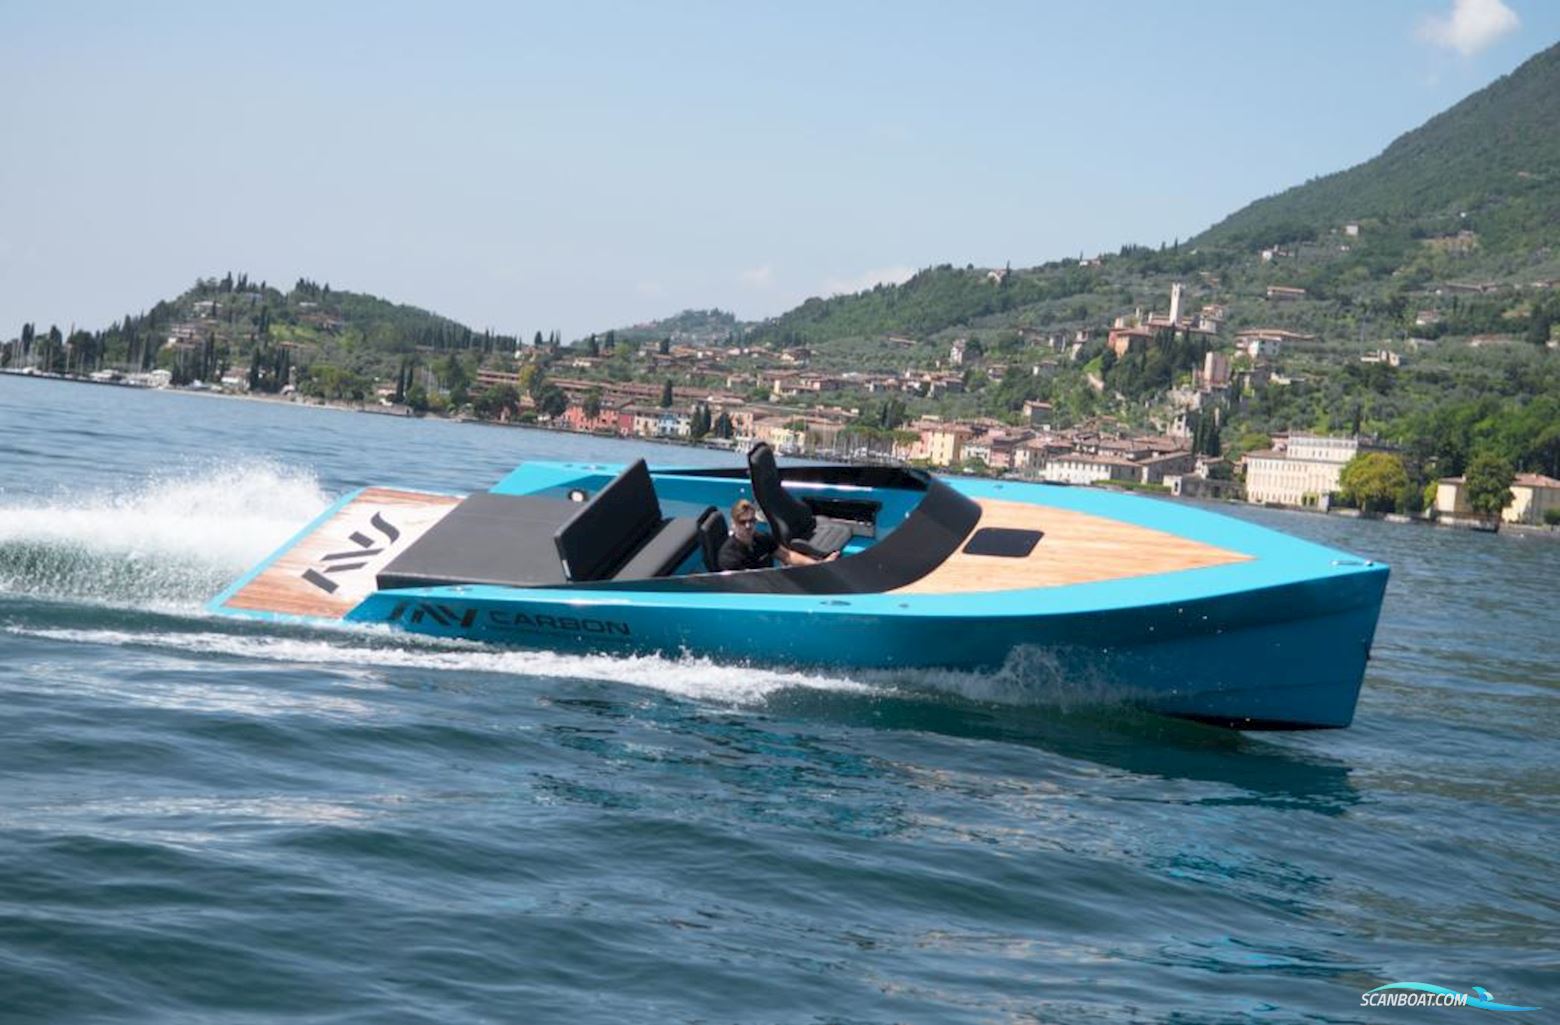 Say 29 -Verkauft- Motor boat 2018, with Mercruiser  V8 6,2 Liter engine, Germany